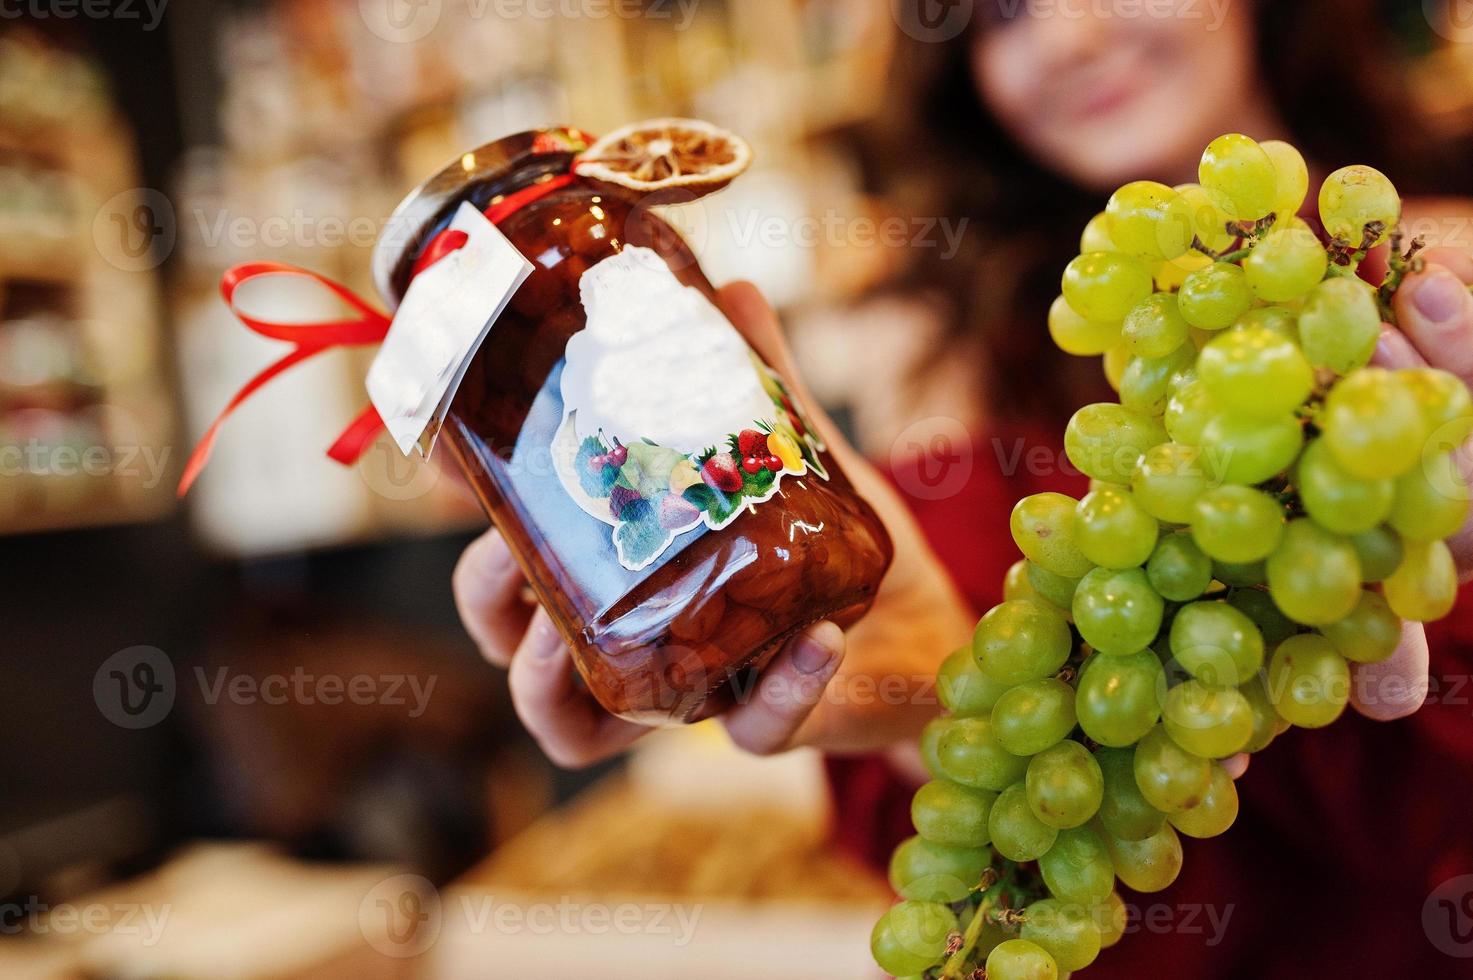 ragazza in rosso con marmellata d'uva in un barattolo sul negozio di frutta. foto